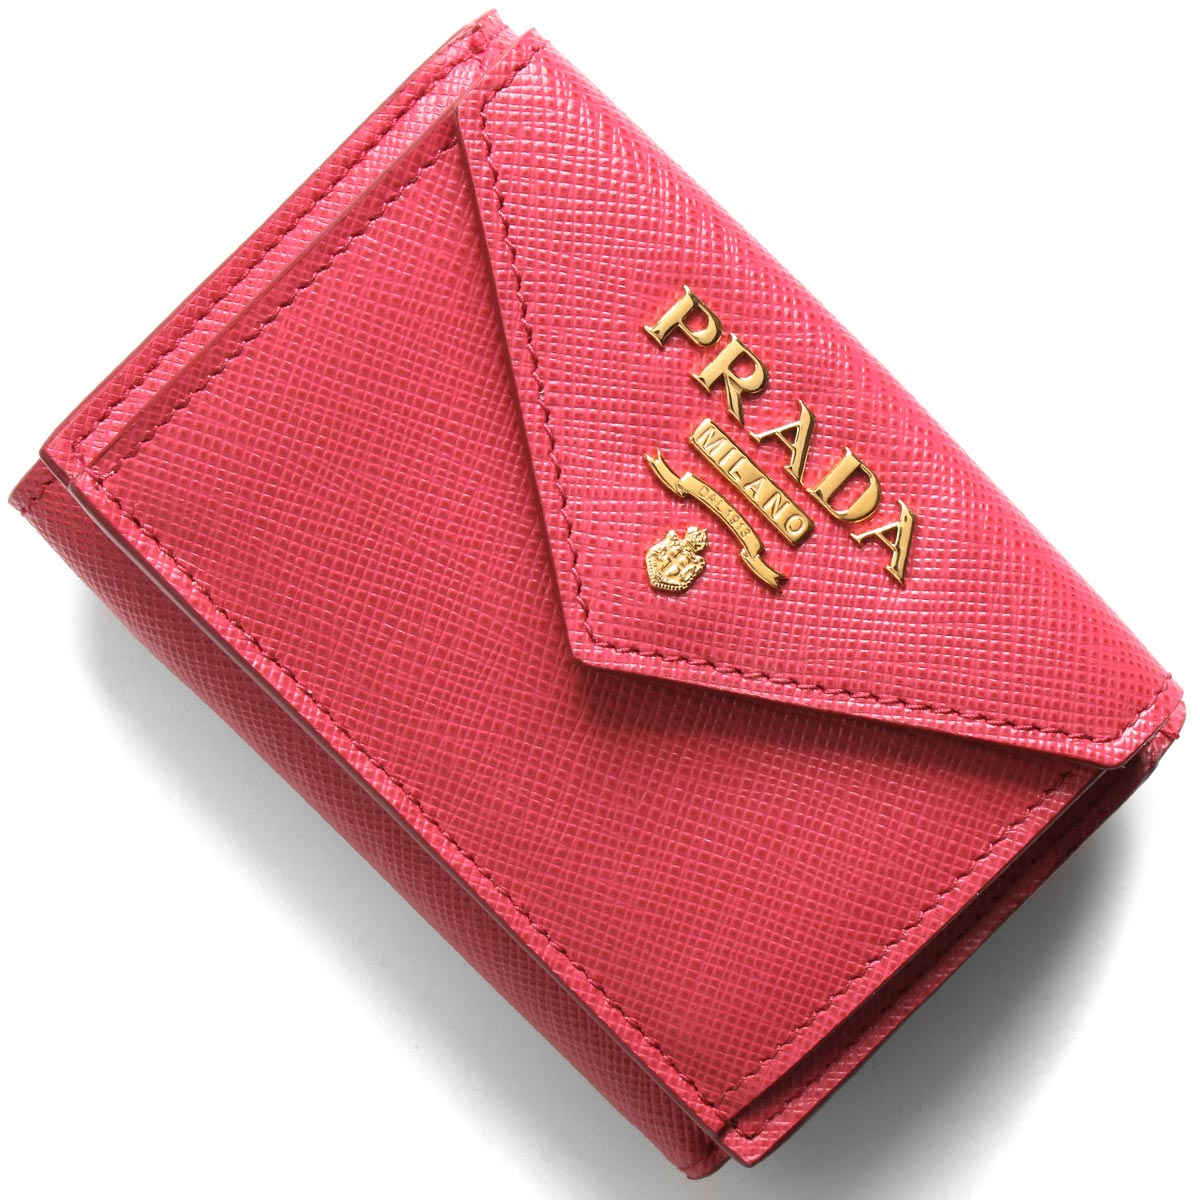 【新品】PRADA プラダ 三つ折り財布 三つ折財布 三つ折り ピンク